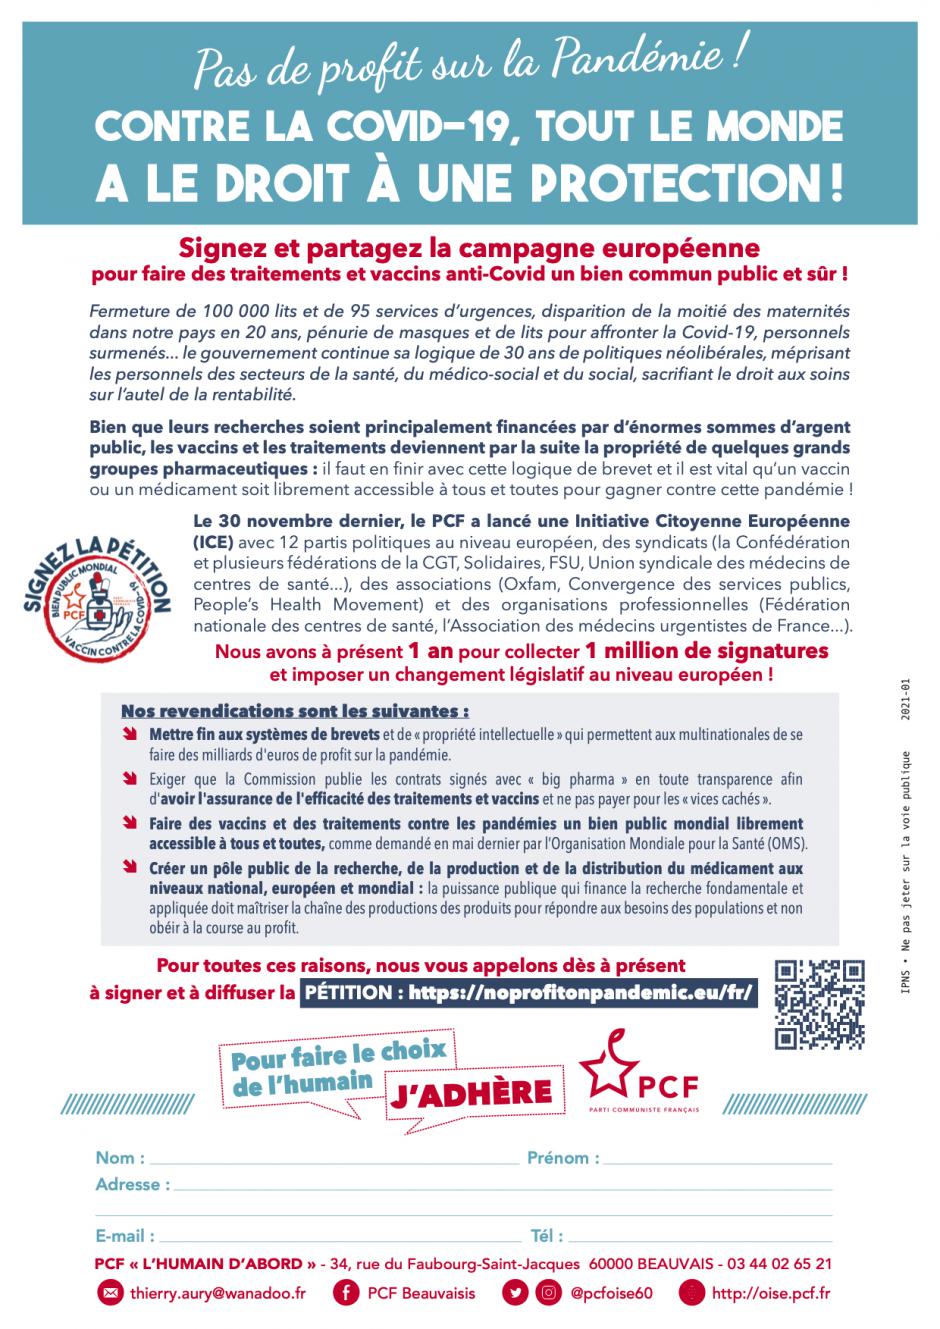 Tract « Pas de profit sur la pandémie ! Tout le monde a le droit à une protection ! » - PCF Beauvaisis, 8 janvier 2021